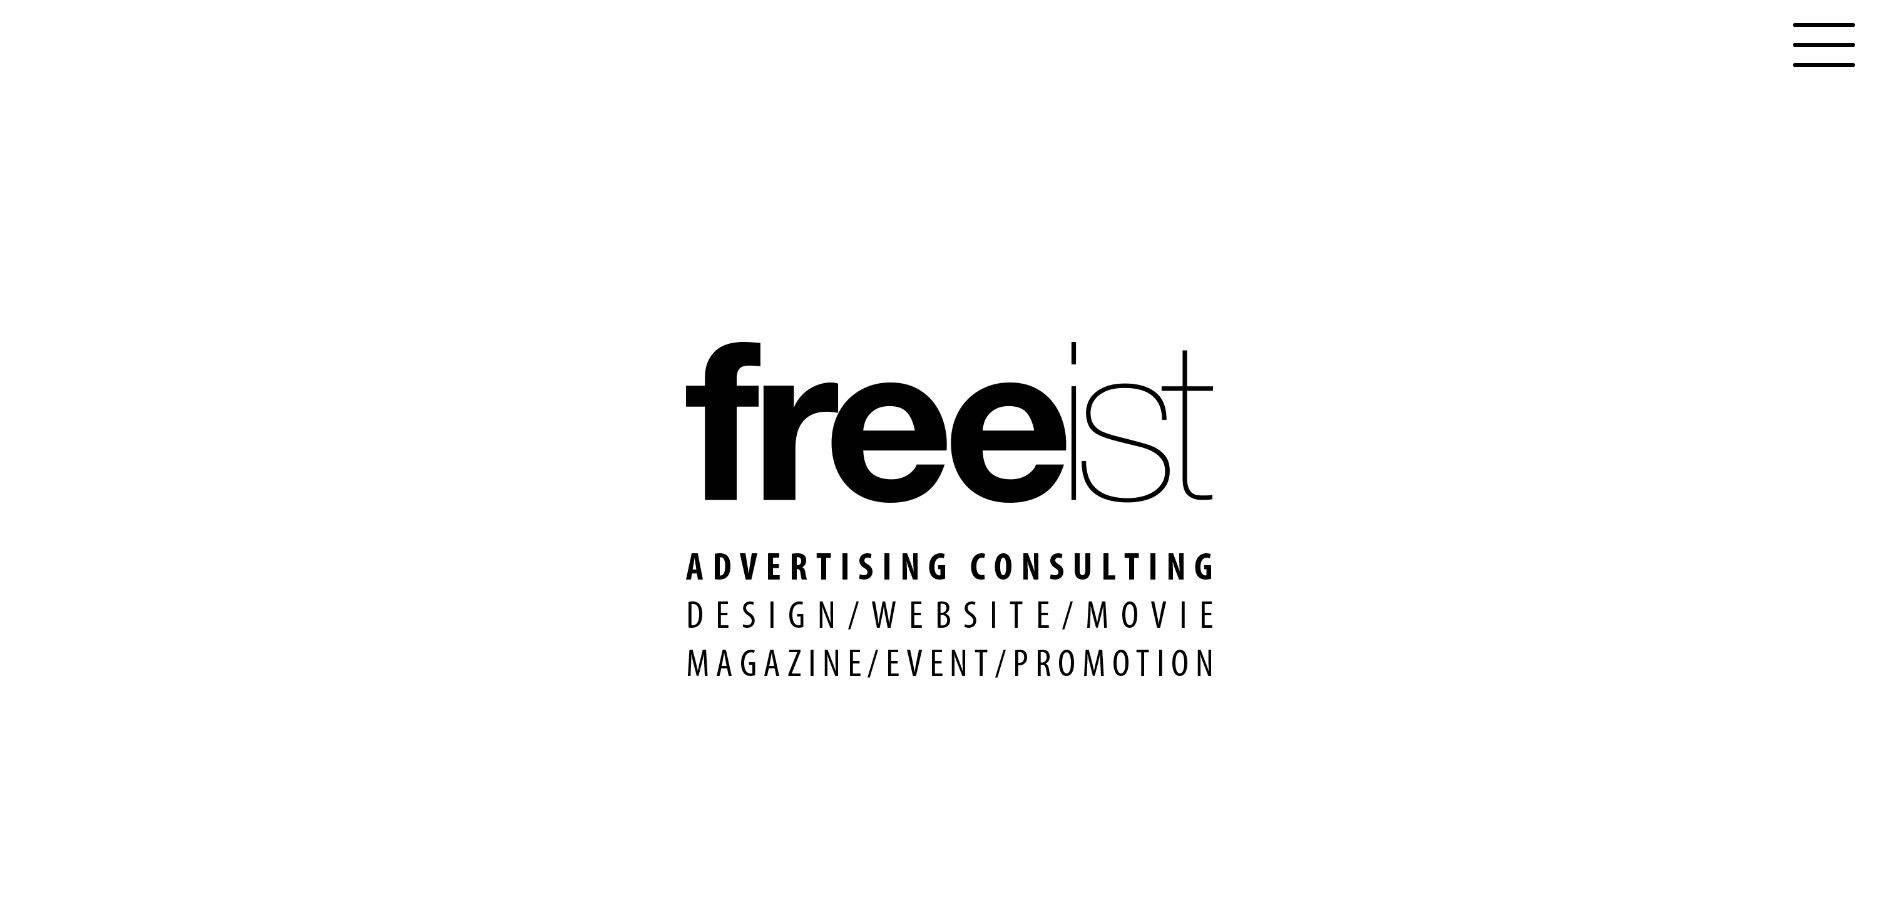 株式会社フリーストの株式会社フリースト:Web広告サービス